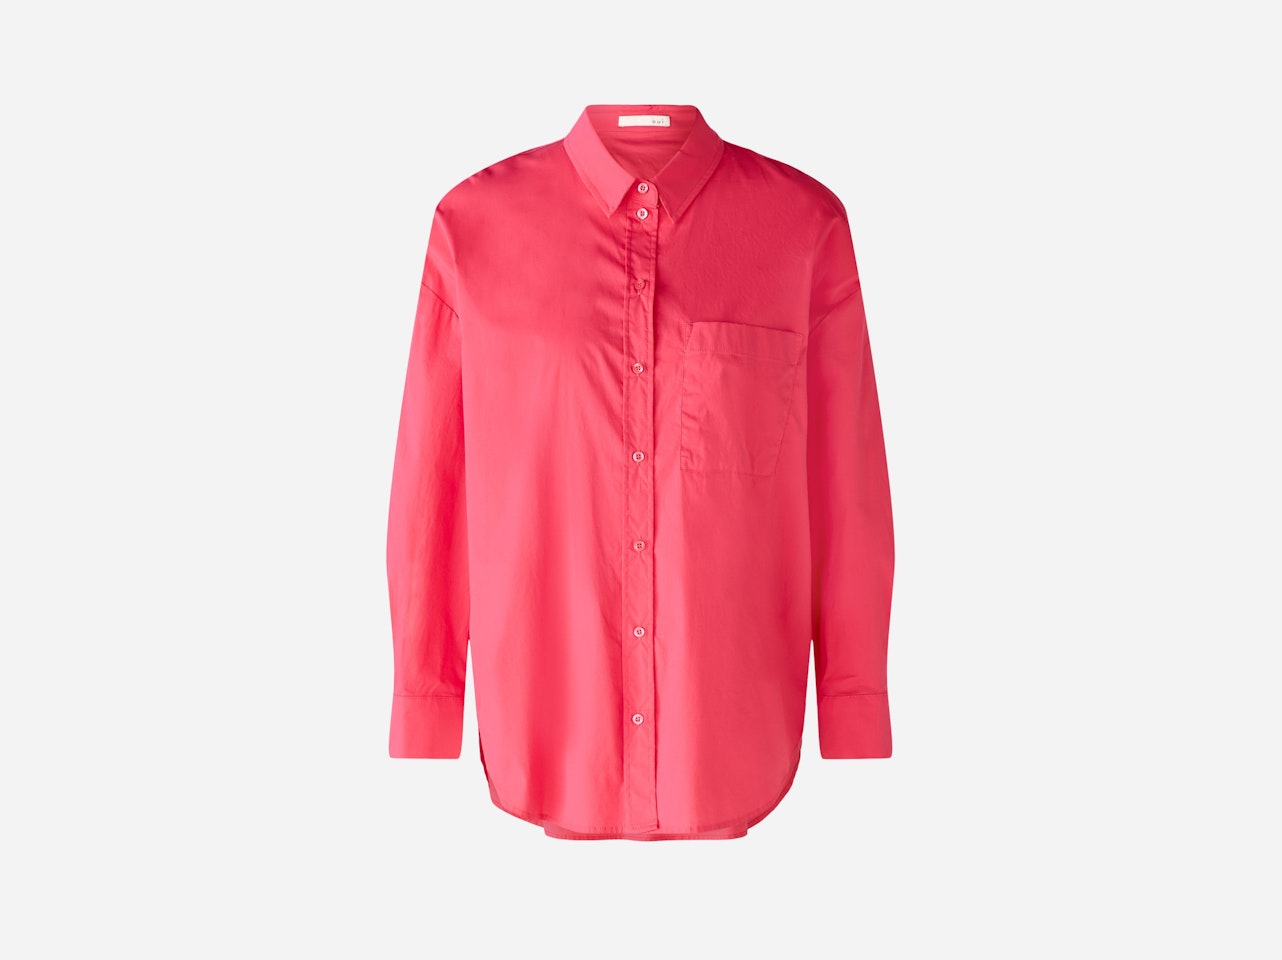 Bild 7 von Shirt blouse stretch cotton poplin in raspberry sorbet | Oui